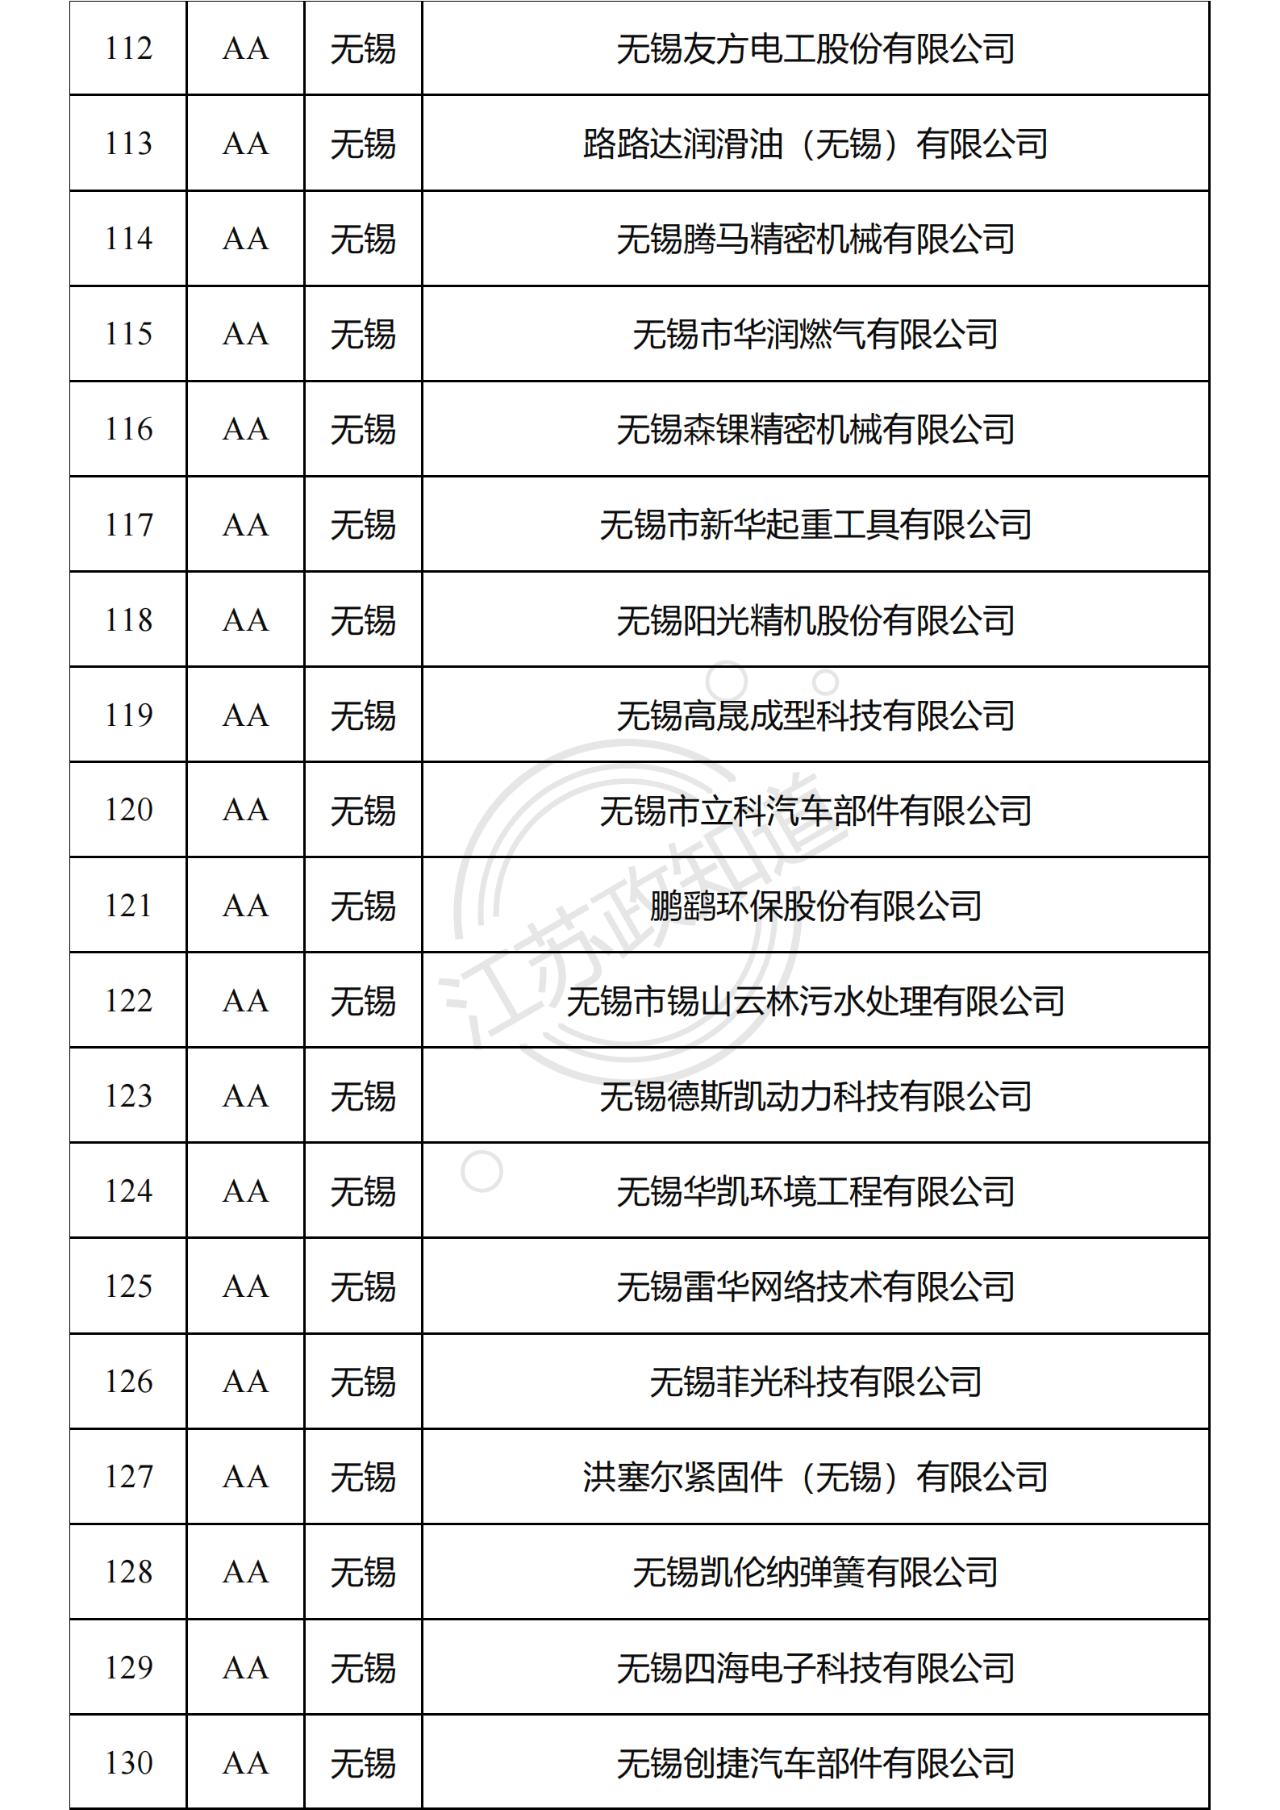 2022年度江苏省两化融合管理体系贯标试点企业培育对象拟认定名单8.png